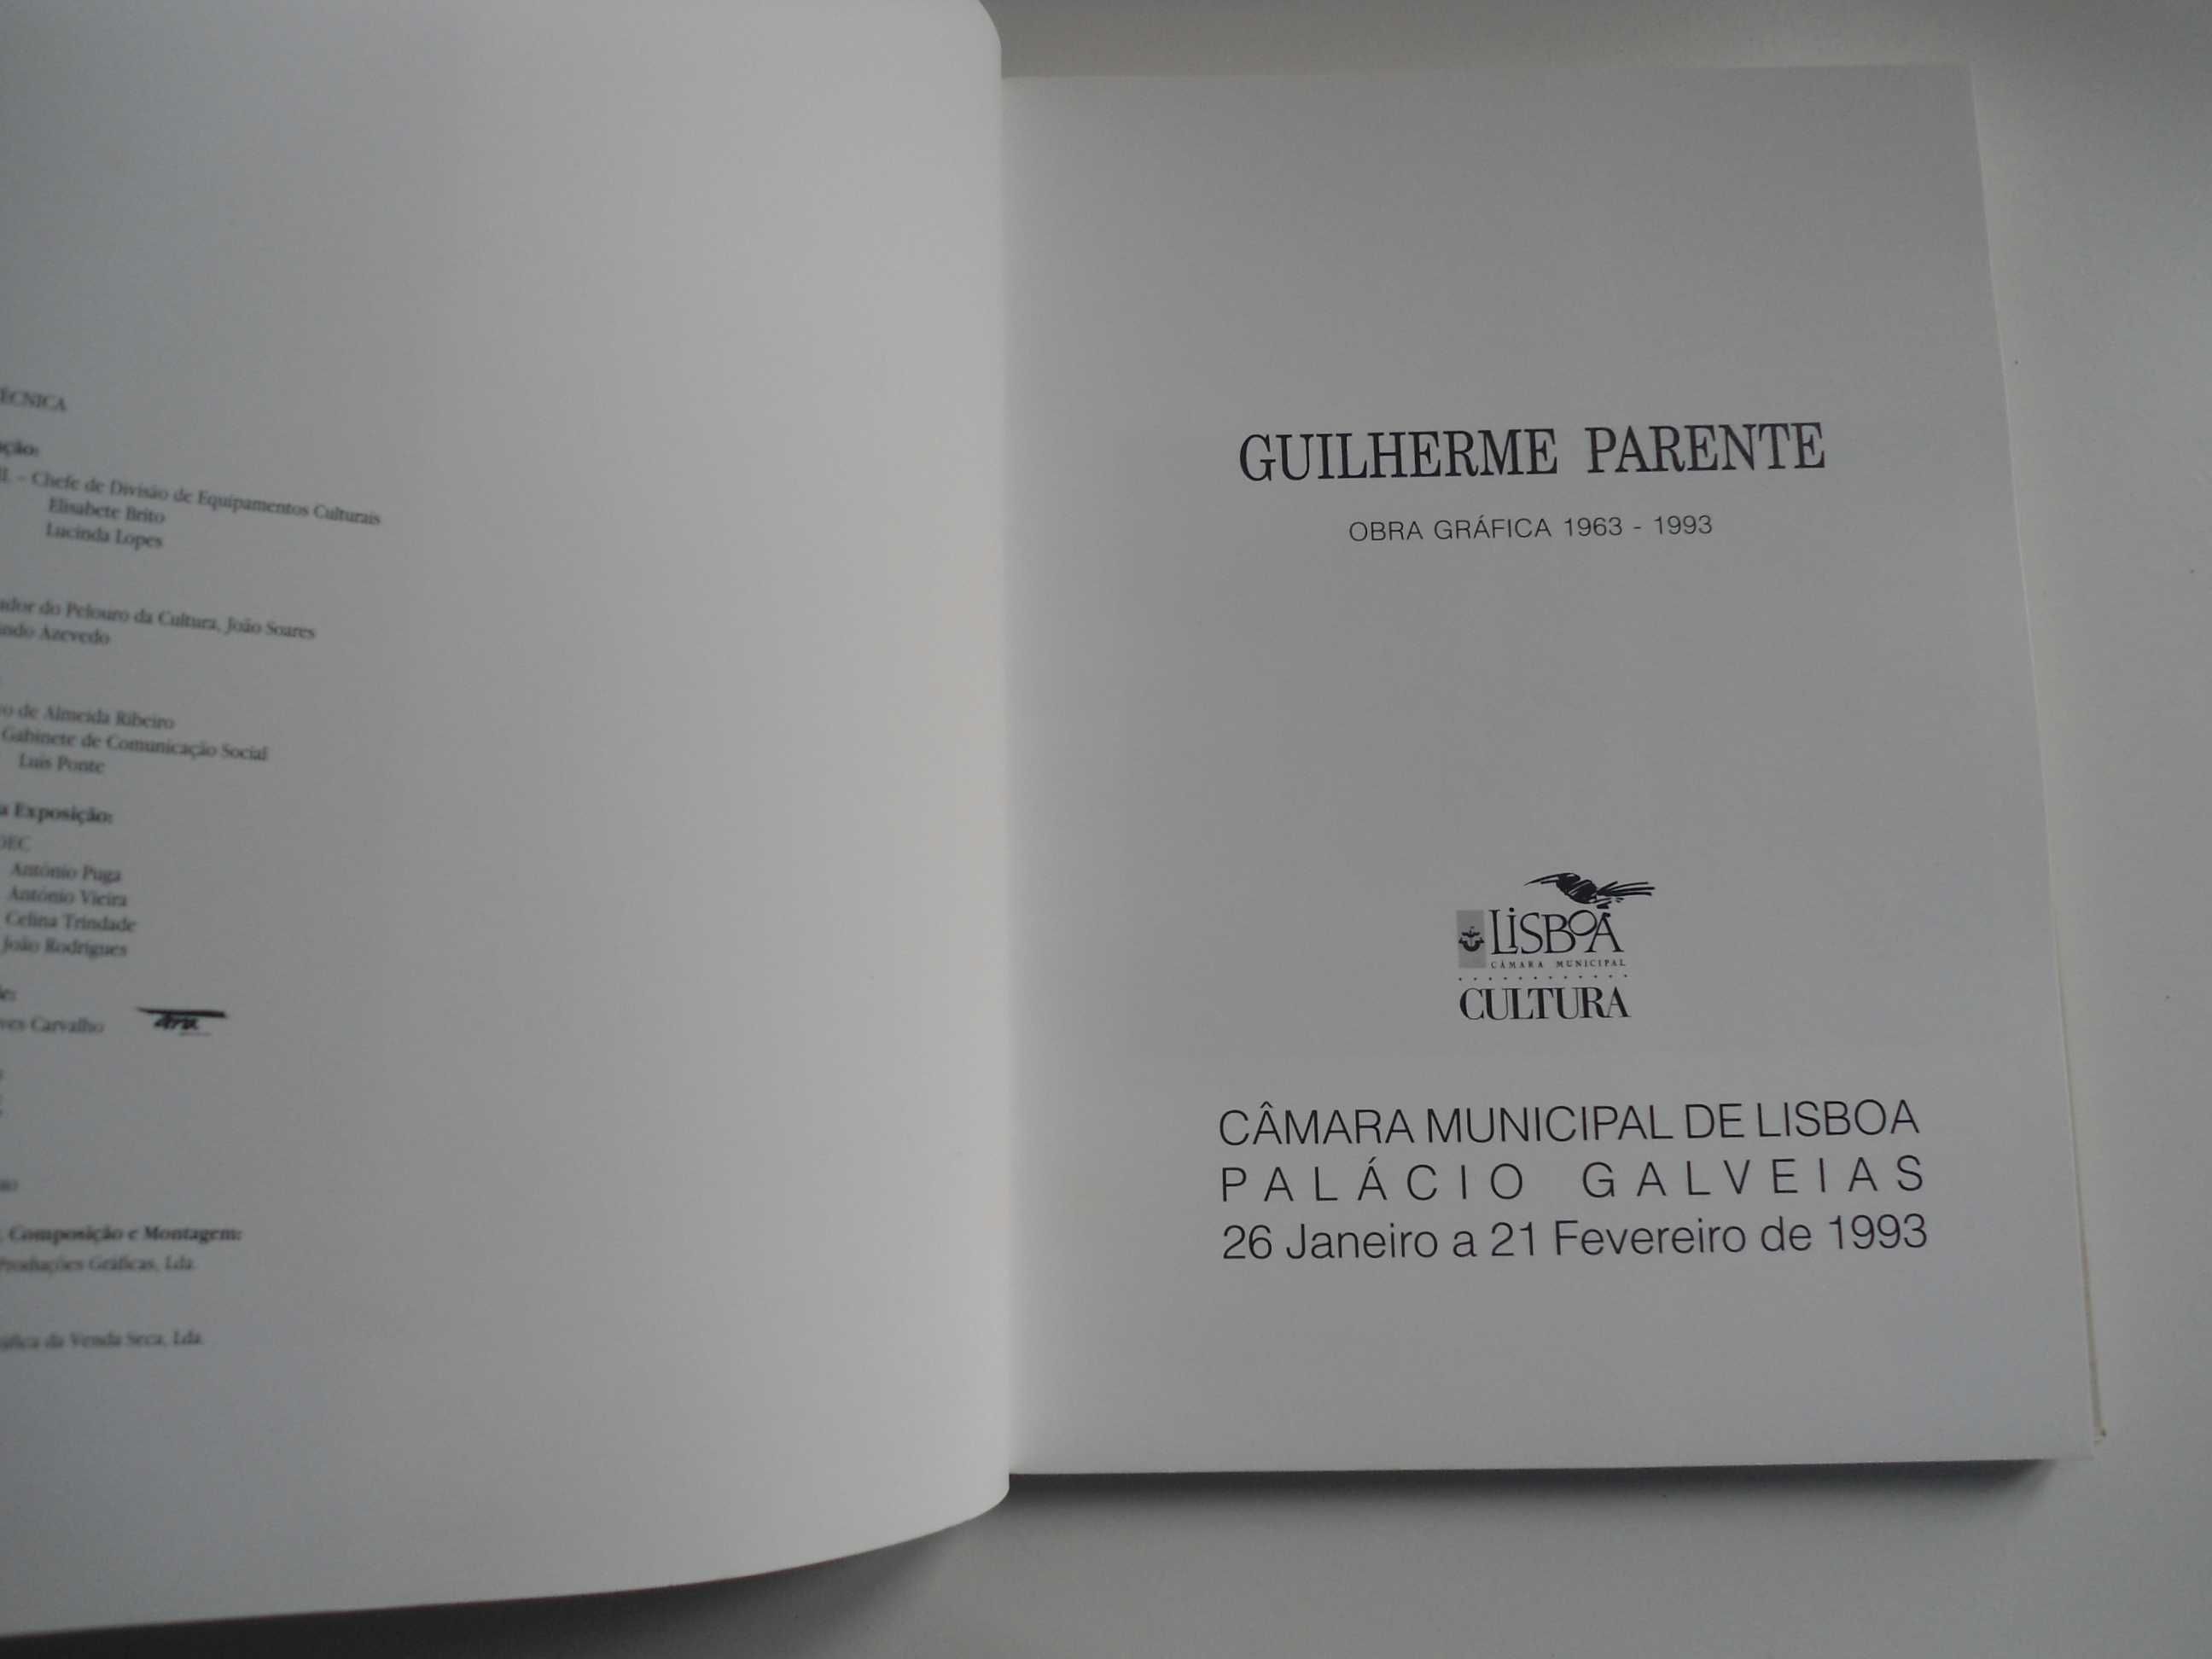 Guilherme Parente - Obra Gráfica de 1963 a 1993